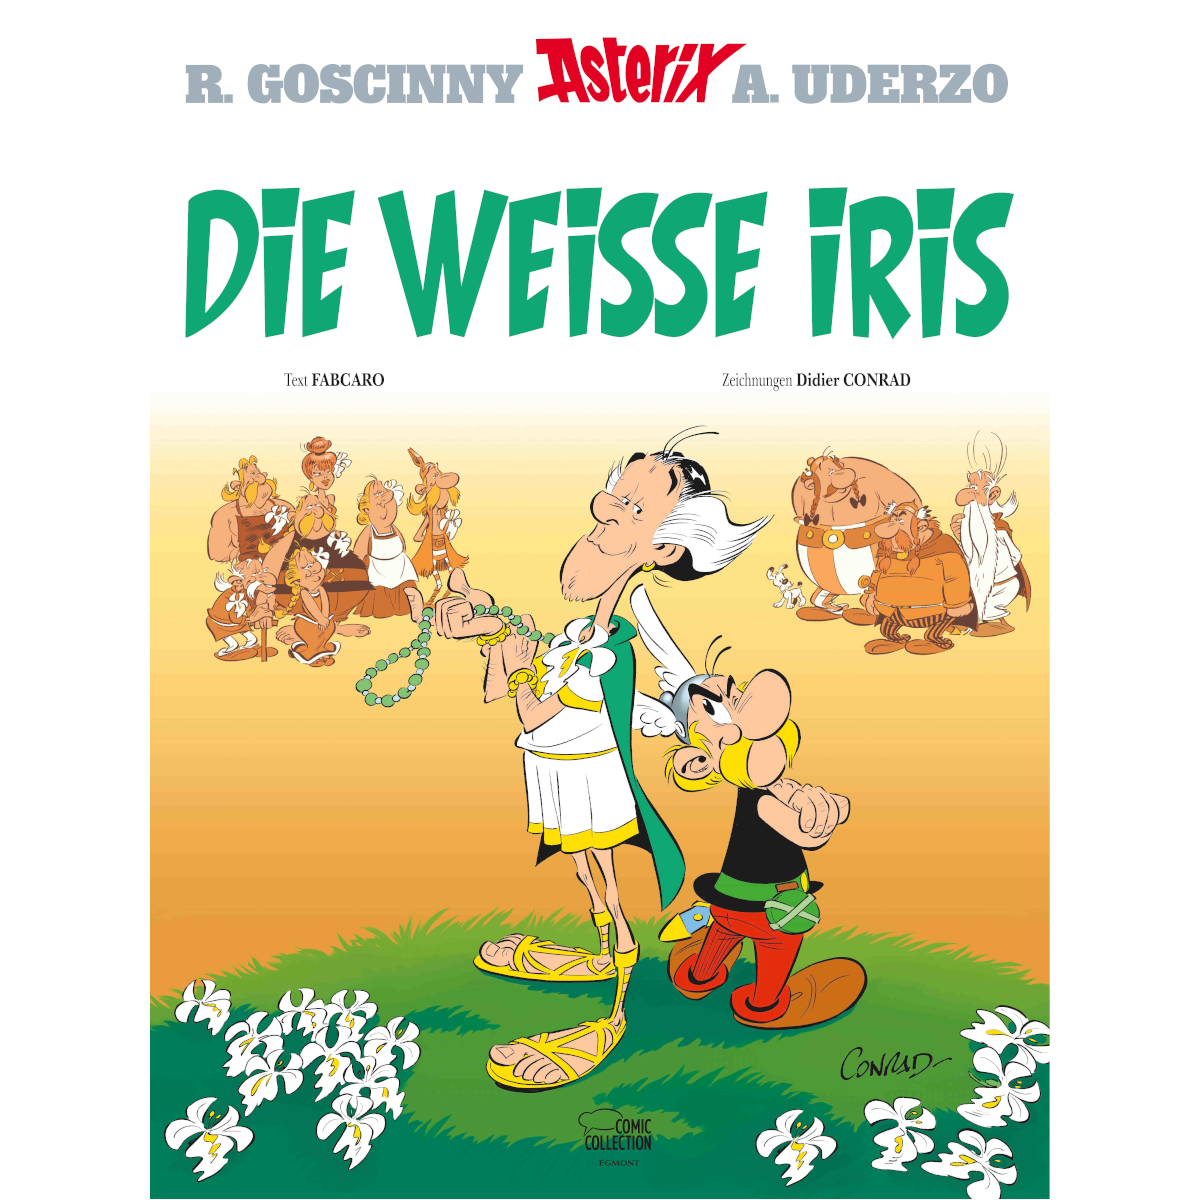 Beim Teutates! Asterix Die Weiße Iris Das Cover ist jetzt da!